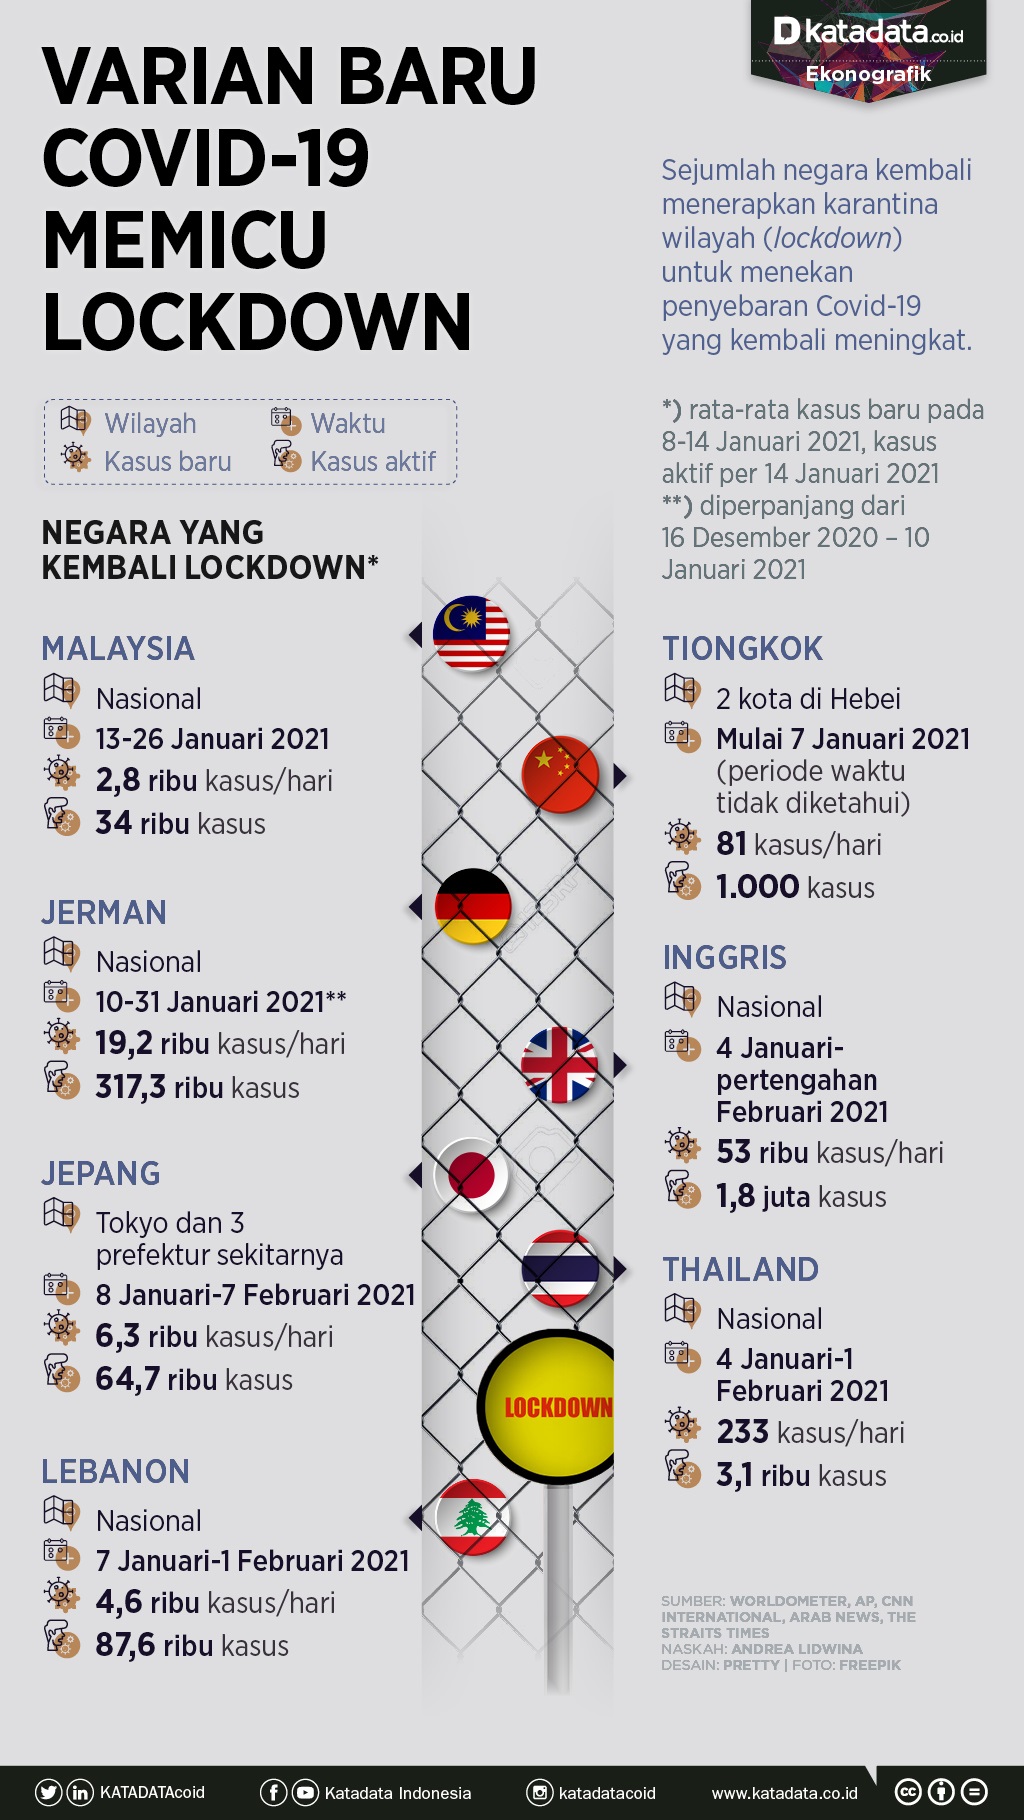 Infografik_Varian baru covid-19 memicu lockdown